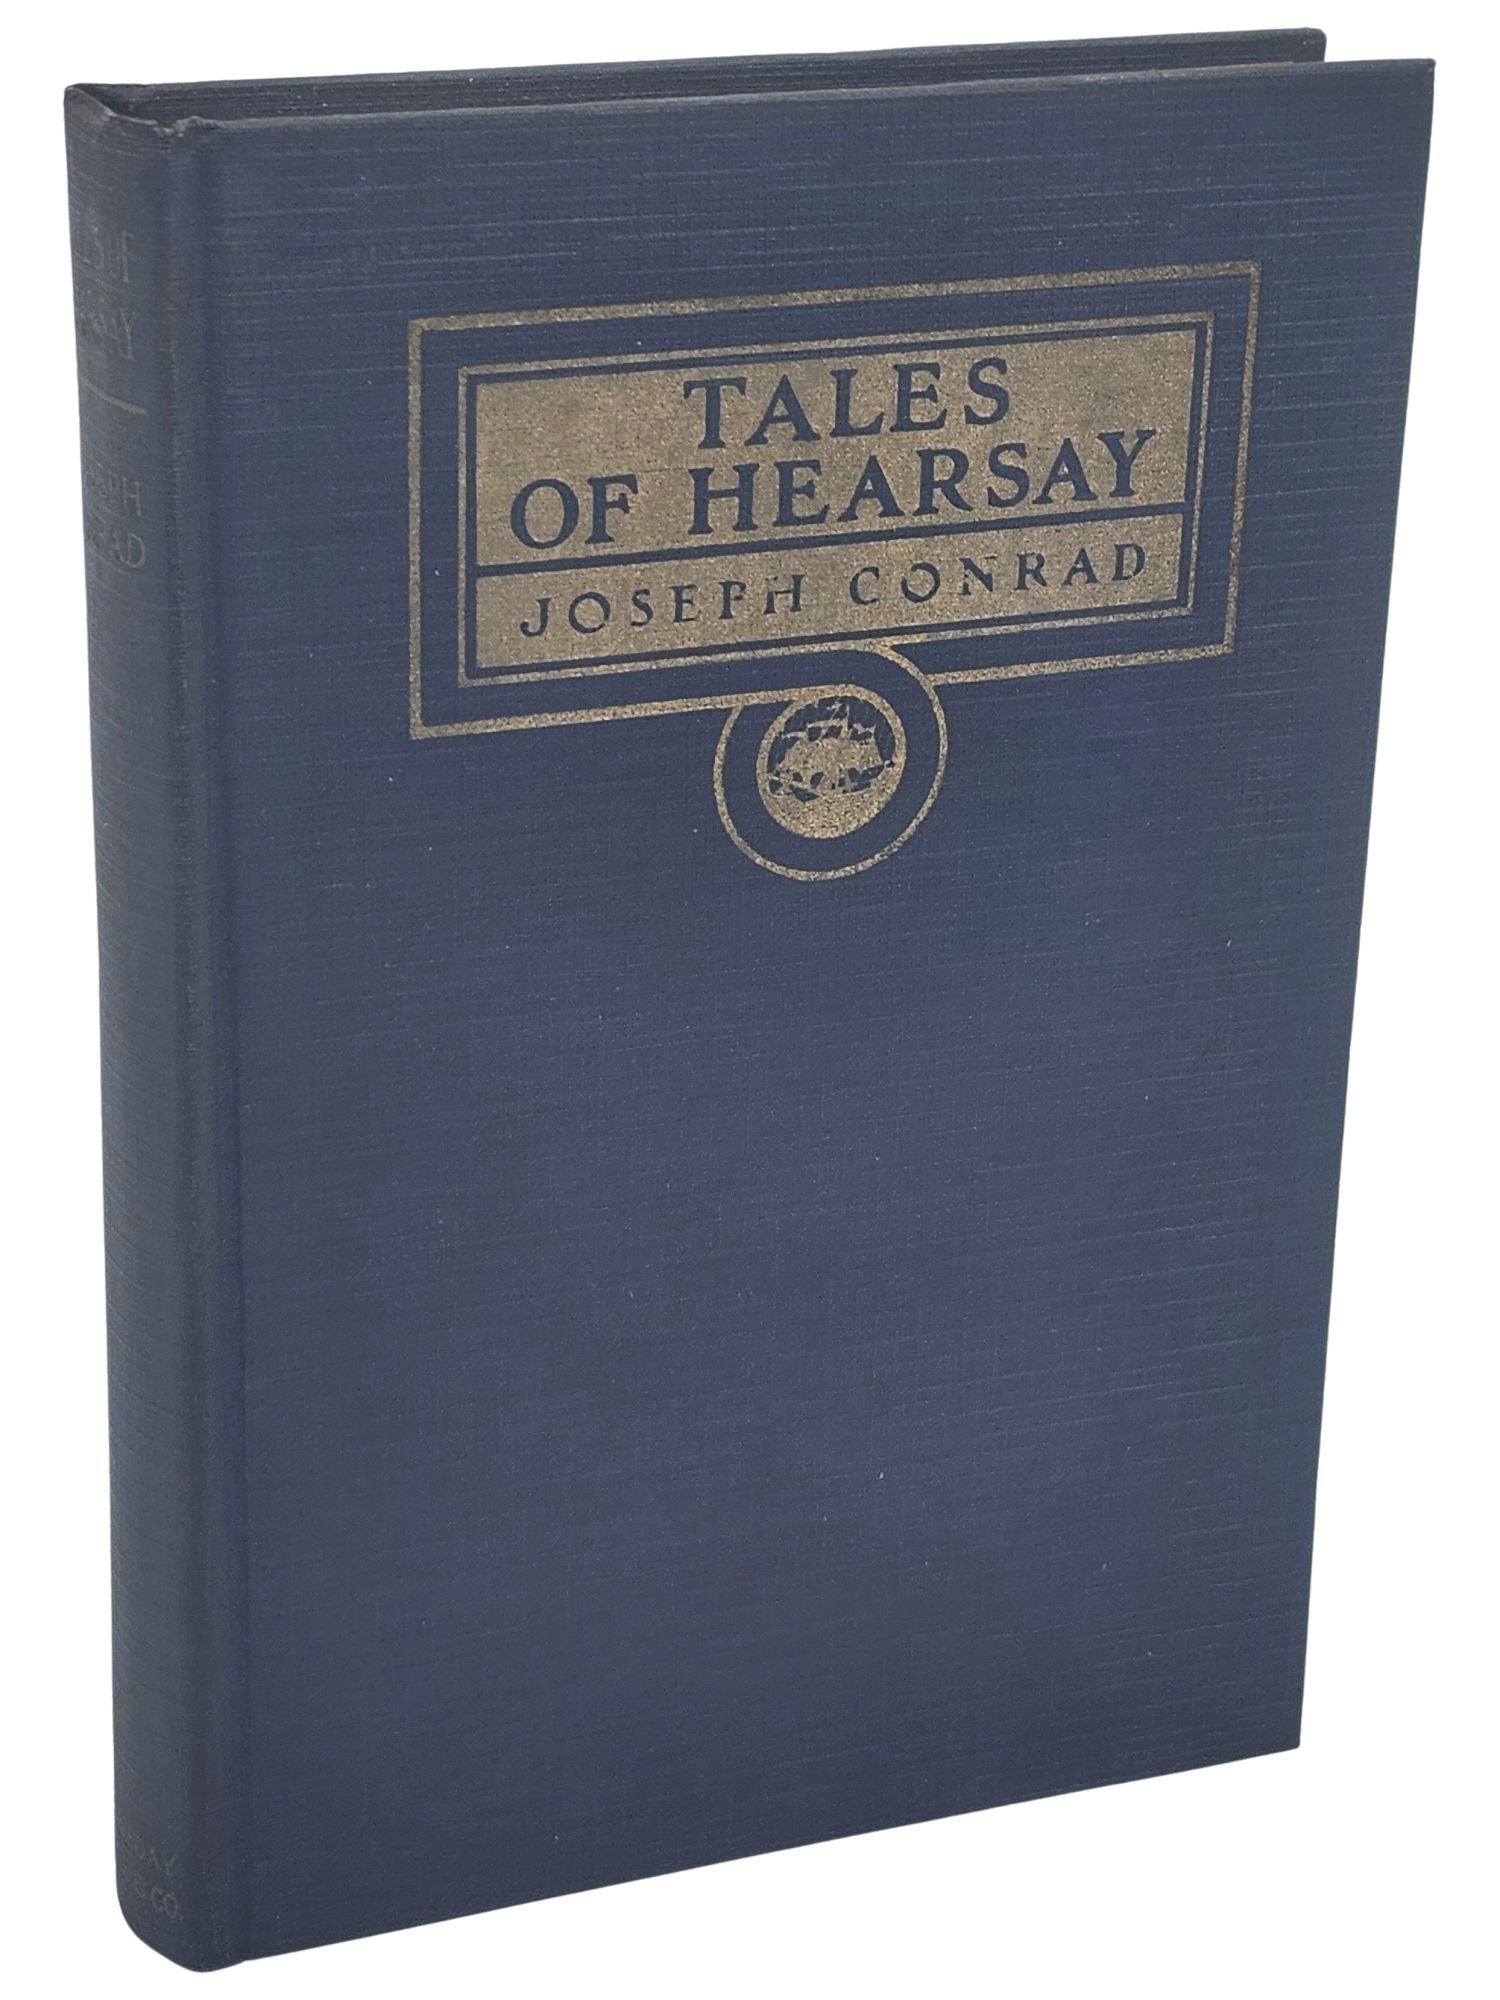 [Book #50766] TALES OF HEARSAY. Joseph Conrad.